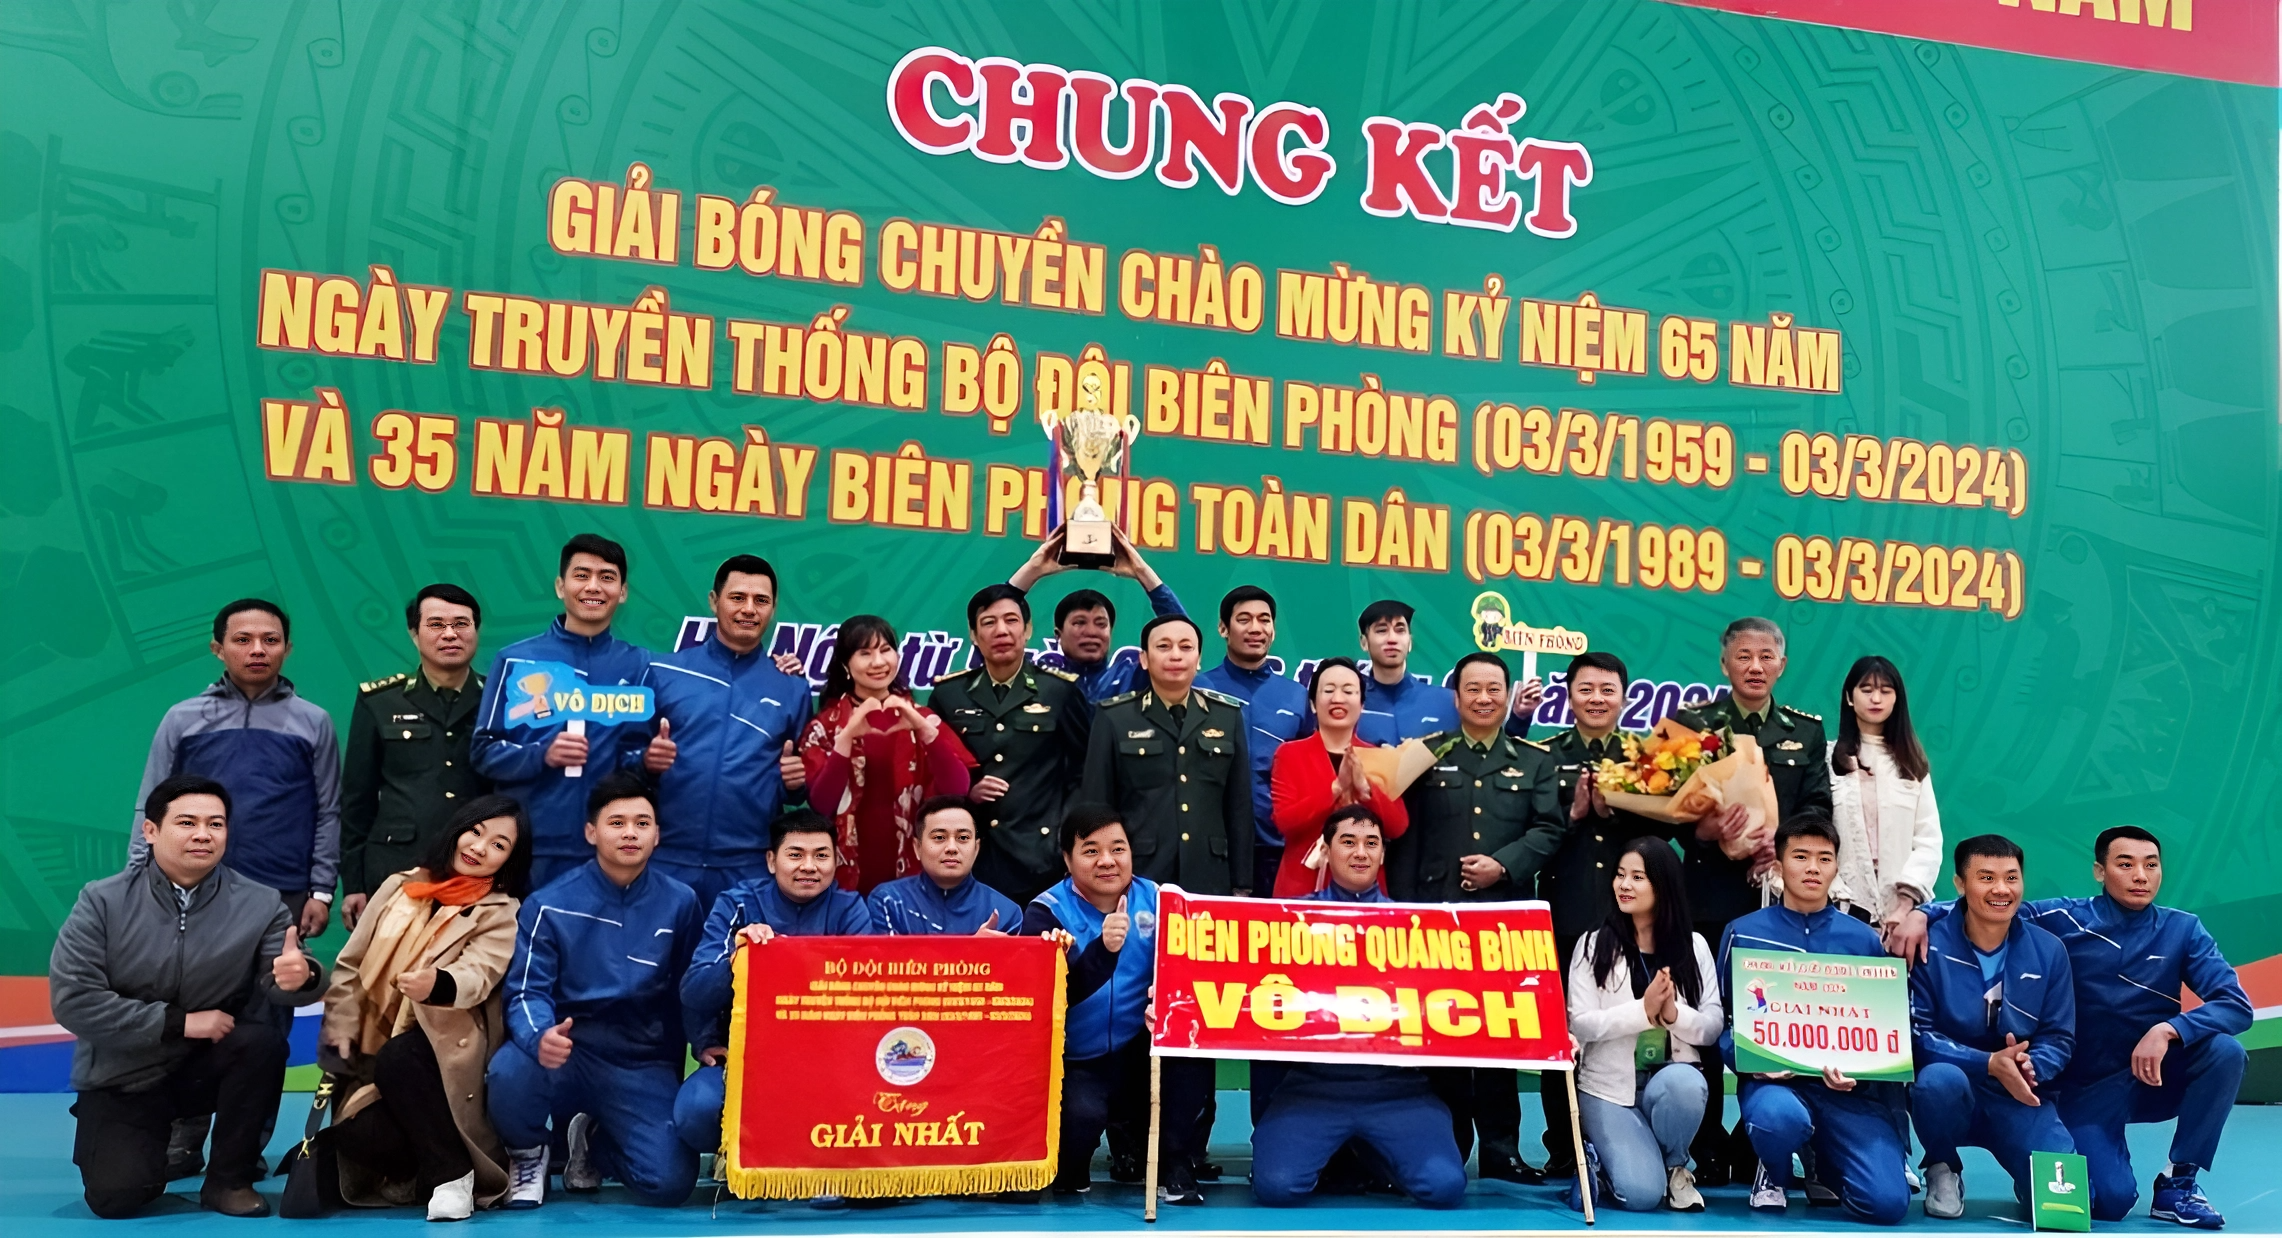 Bộ đội Biên phòng Quảng Bình vô địch giải bóng chuyền kỷ niệm 65 năm truyền thống Bộ đội Biên phòng